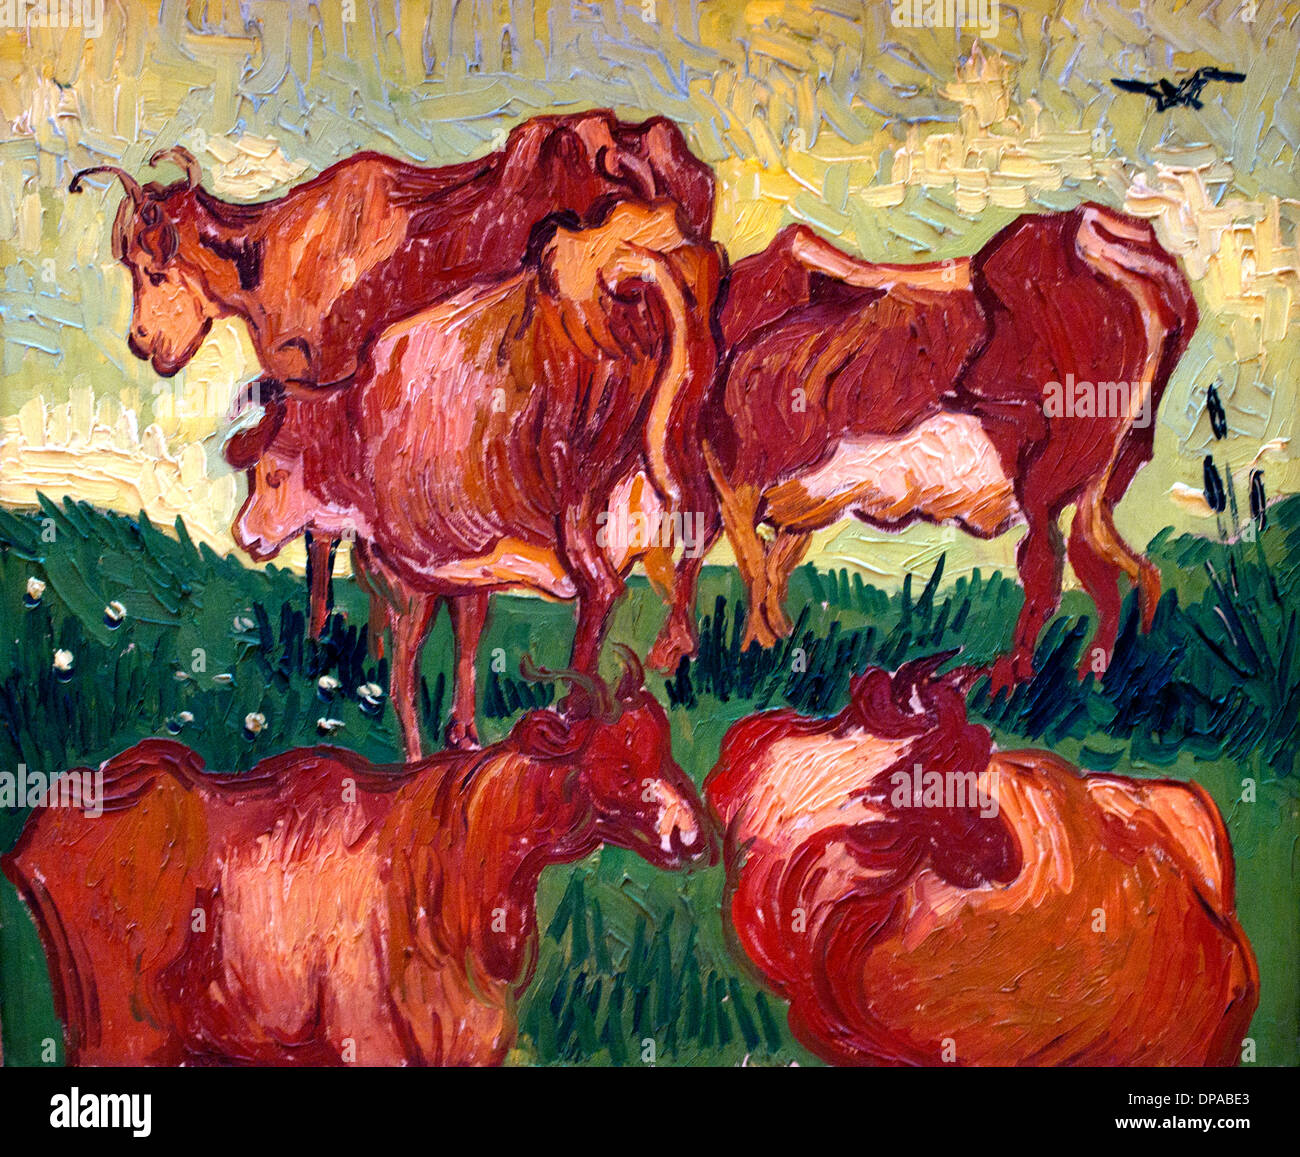 Les vaches par Vincent van Gogh 1853-1890 Pays-Bas Néerlandais Banque D'Images